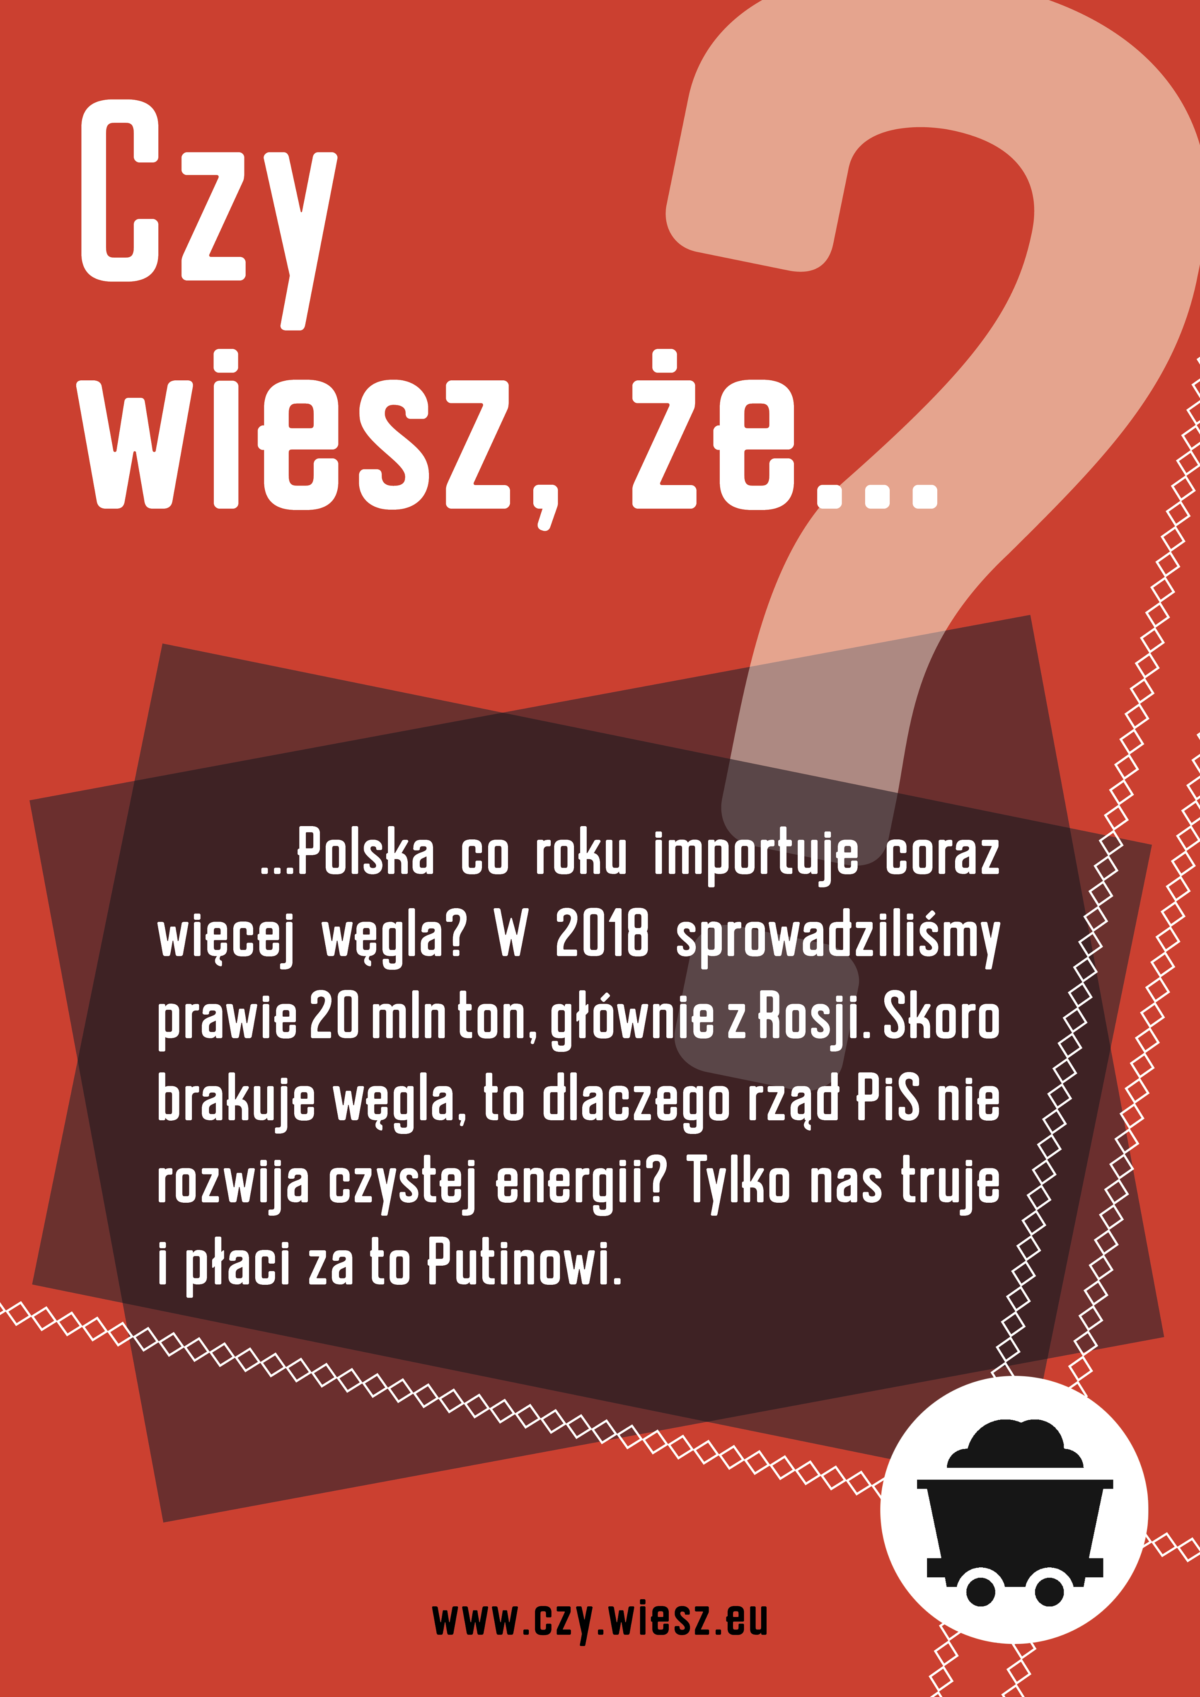 Czy wiesz, że Polska co roku importuje coraz więcej węgla?